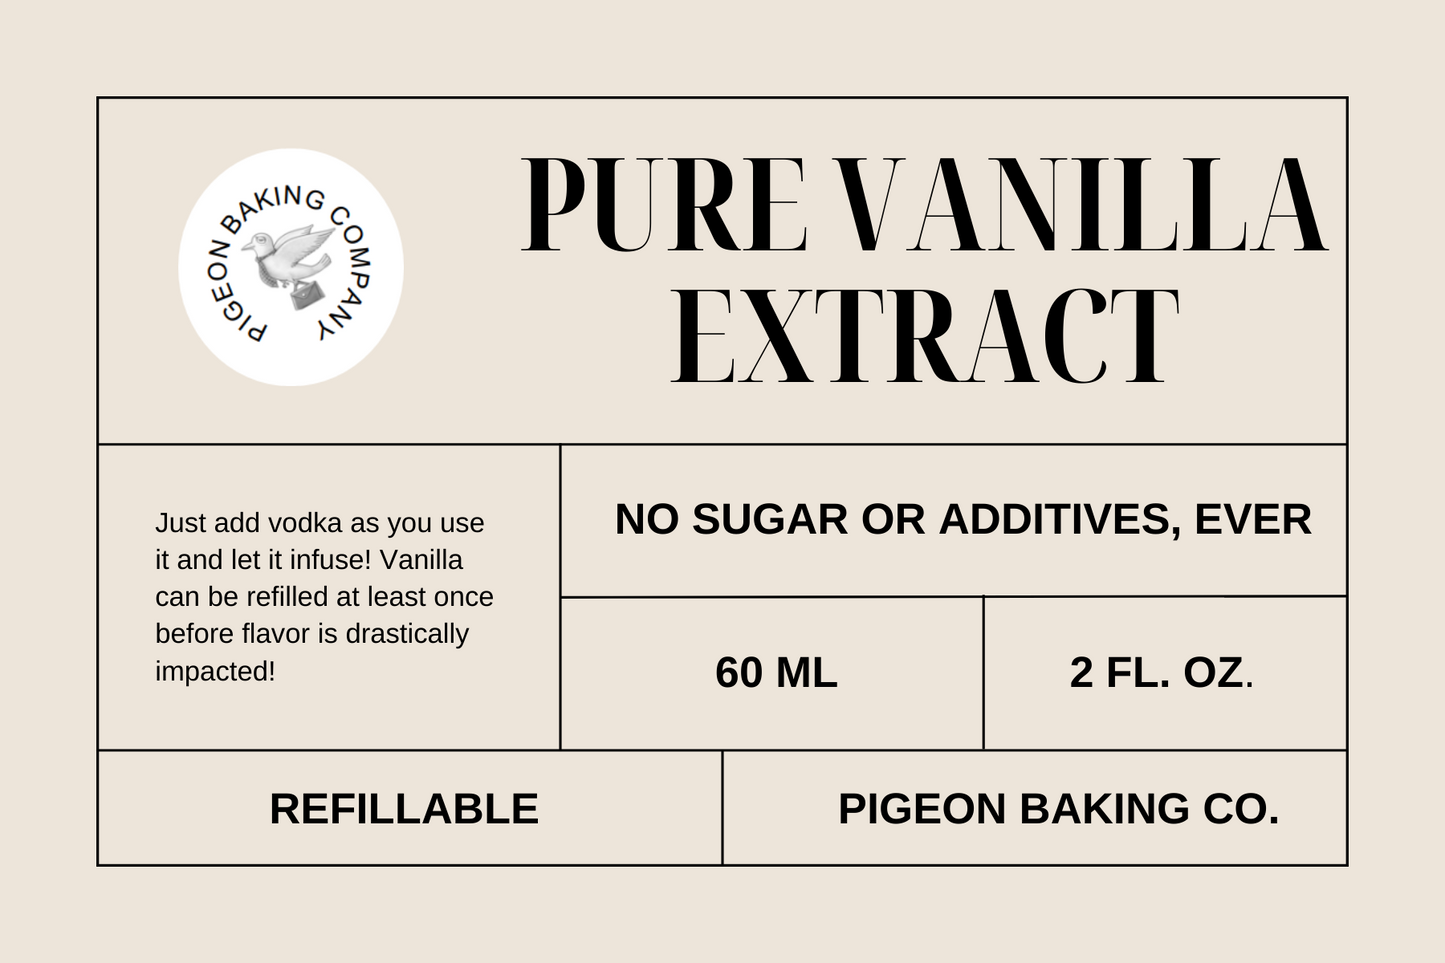 Extracto de vainilla ecuatoriano de origen único puro y totalmente natural de BEAN-IN